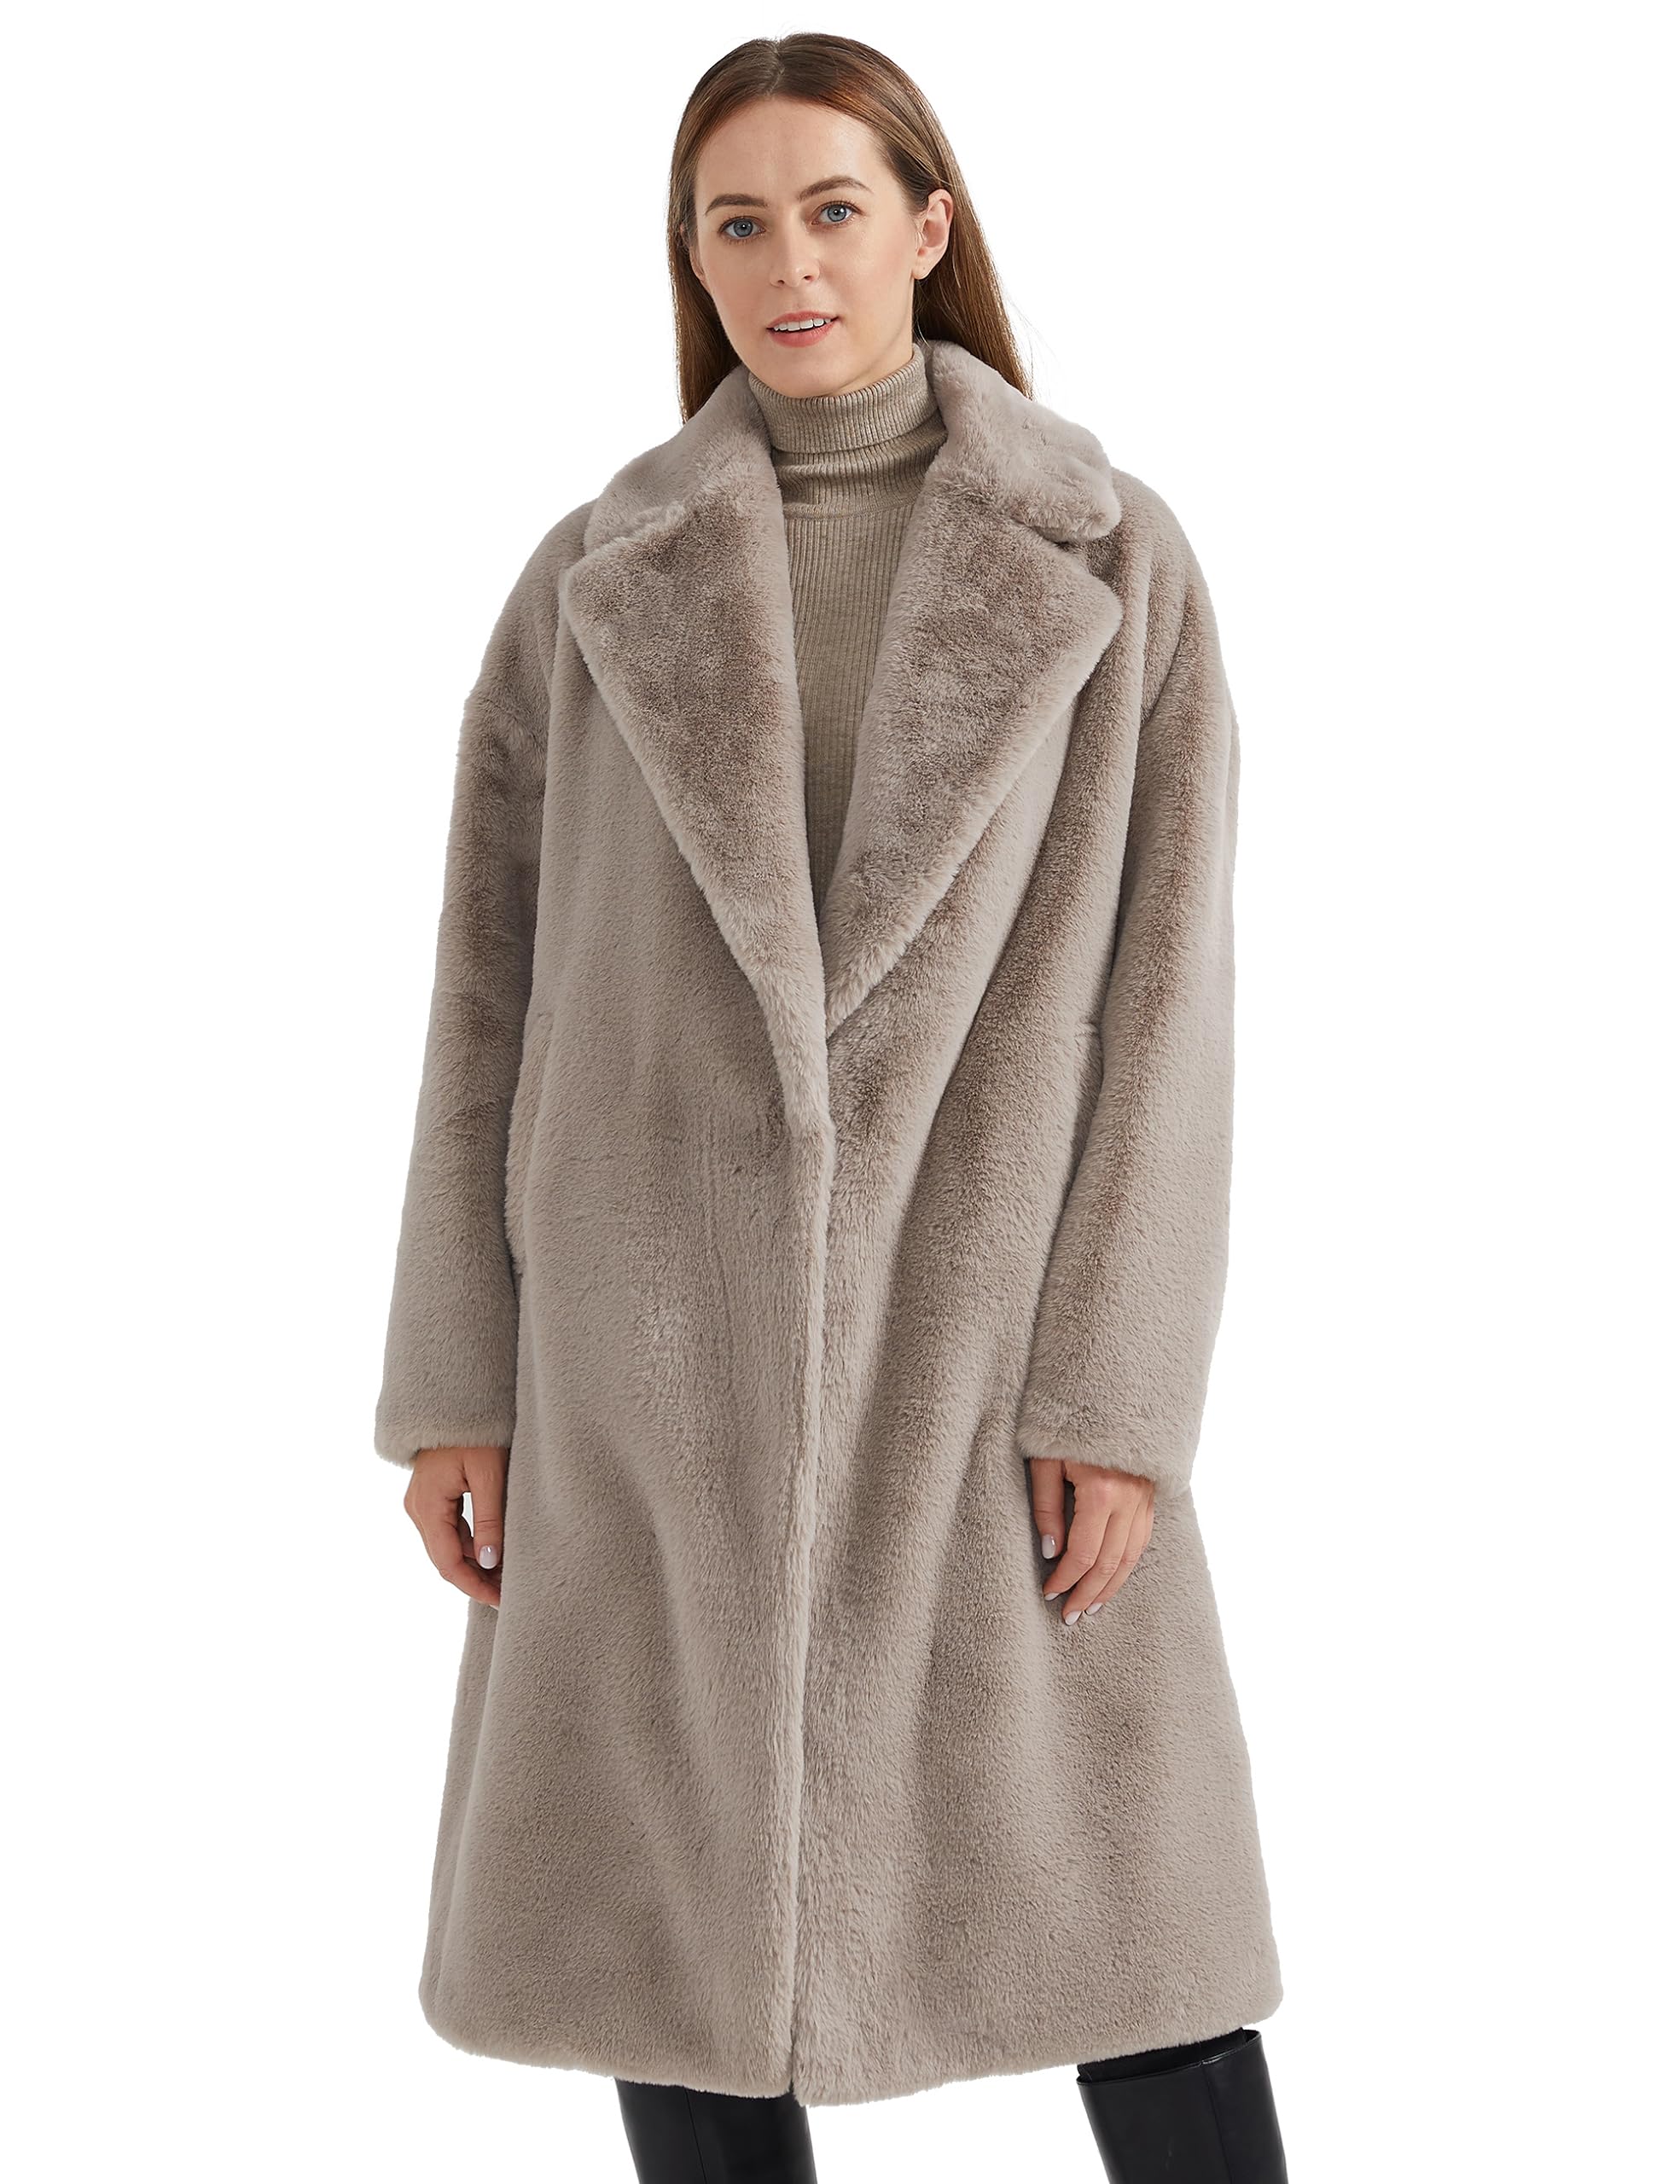 Orolay Women's Fuzzy Fleece Winter Jacket Faux Fur Lapel Coat Mid-Length Sherpa Teddy Coat Grey M